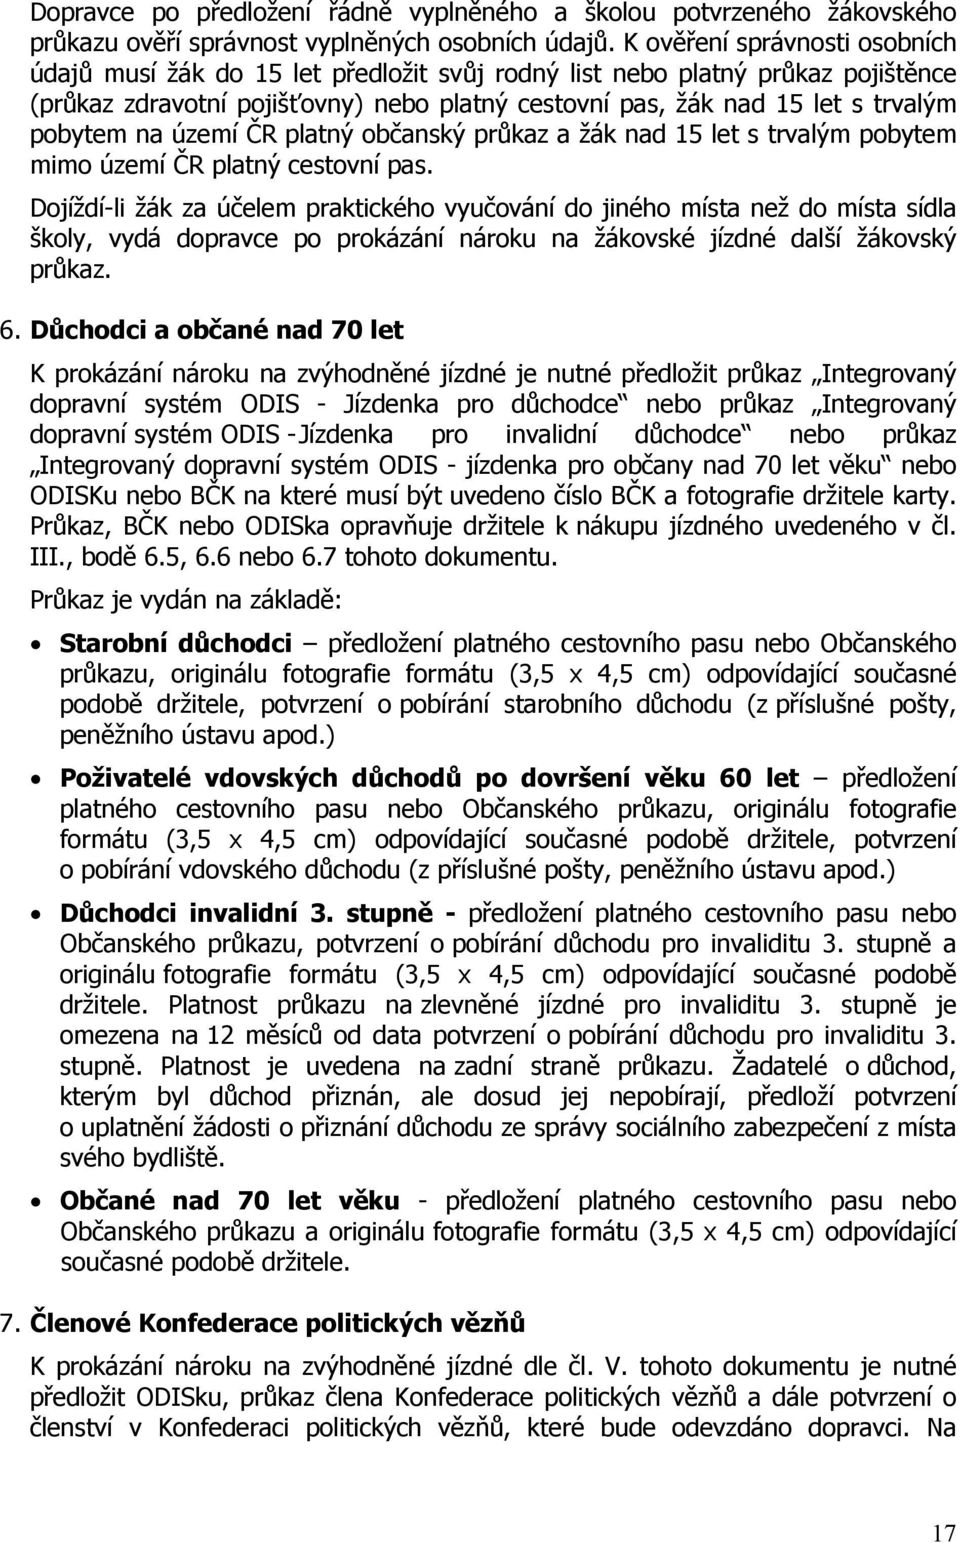 na území ČR platný občanský průkaz a žák nad 15 let s trvalým pobytem mimo území ČR platný cestovní pas.